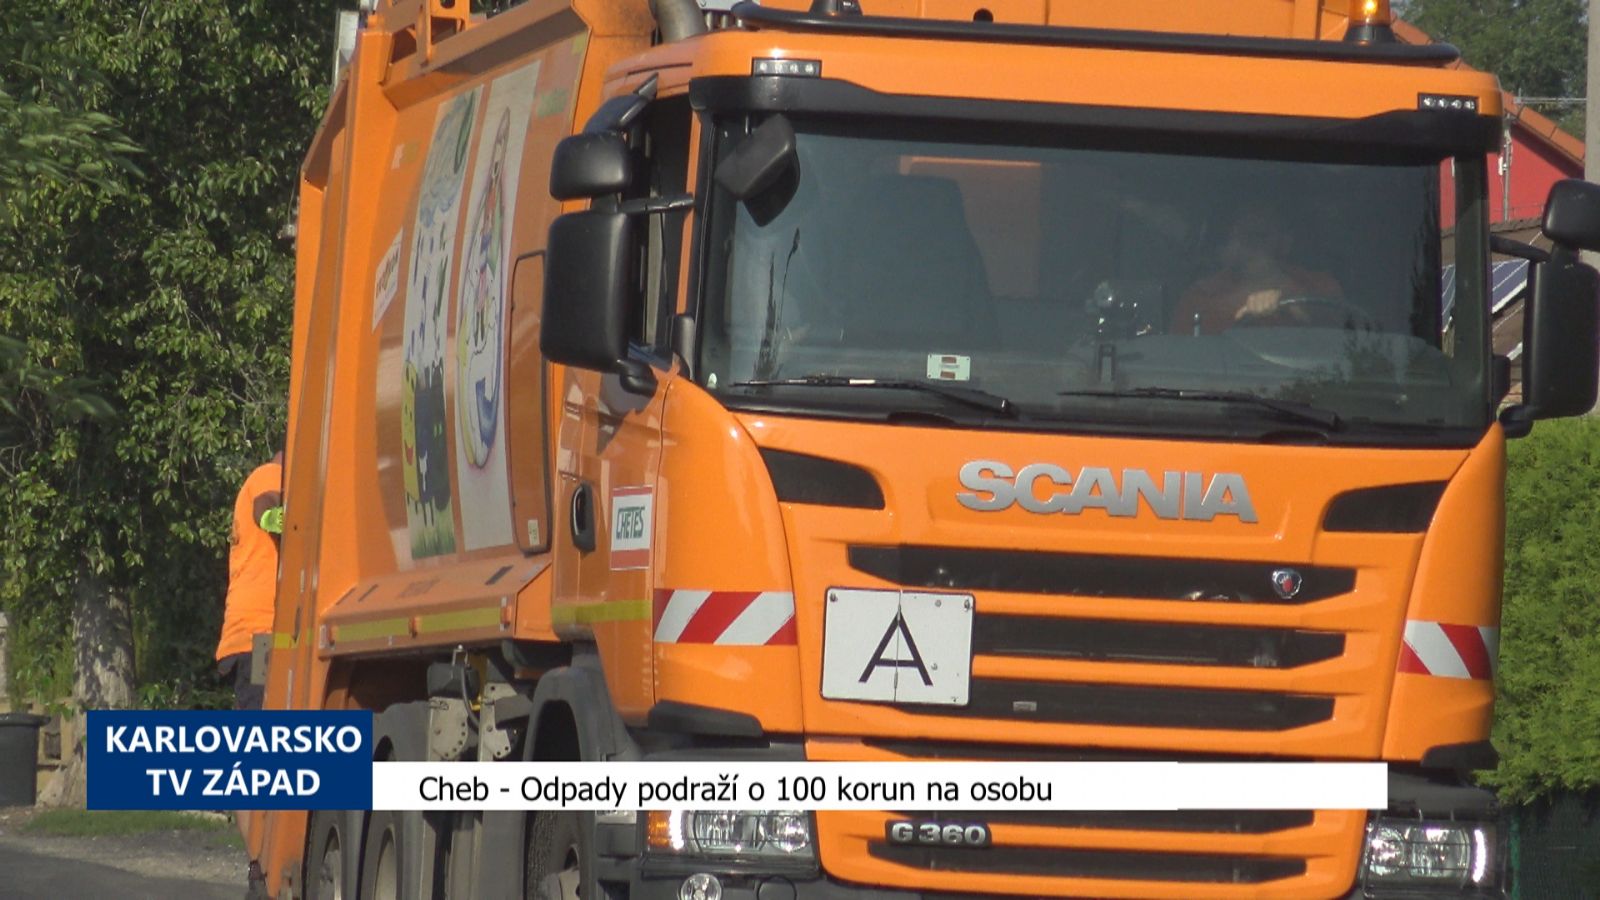 Cheb: Odpady podraží o 100 korun na osobu (TV Západ)